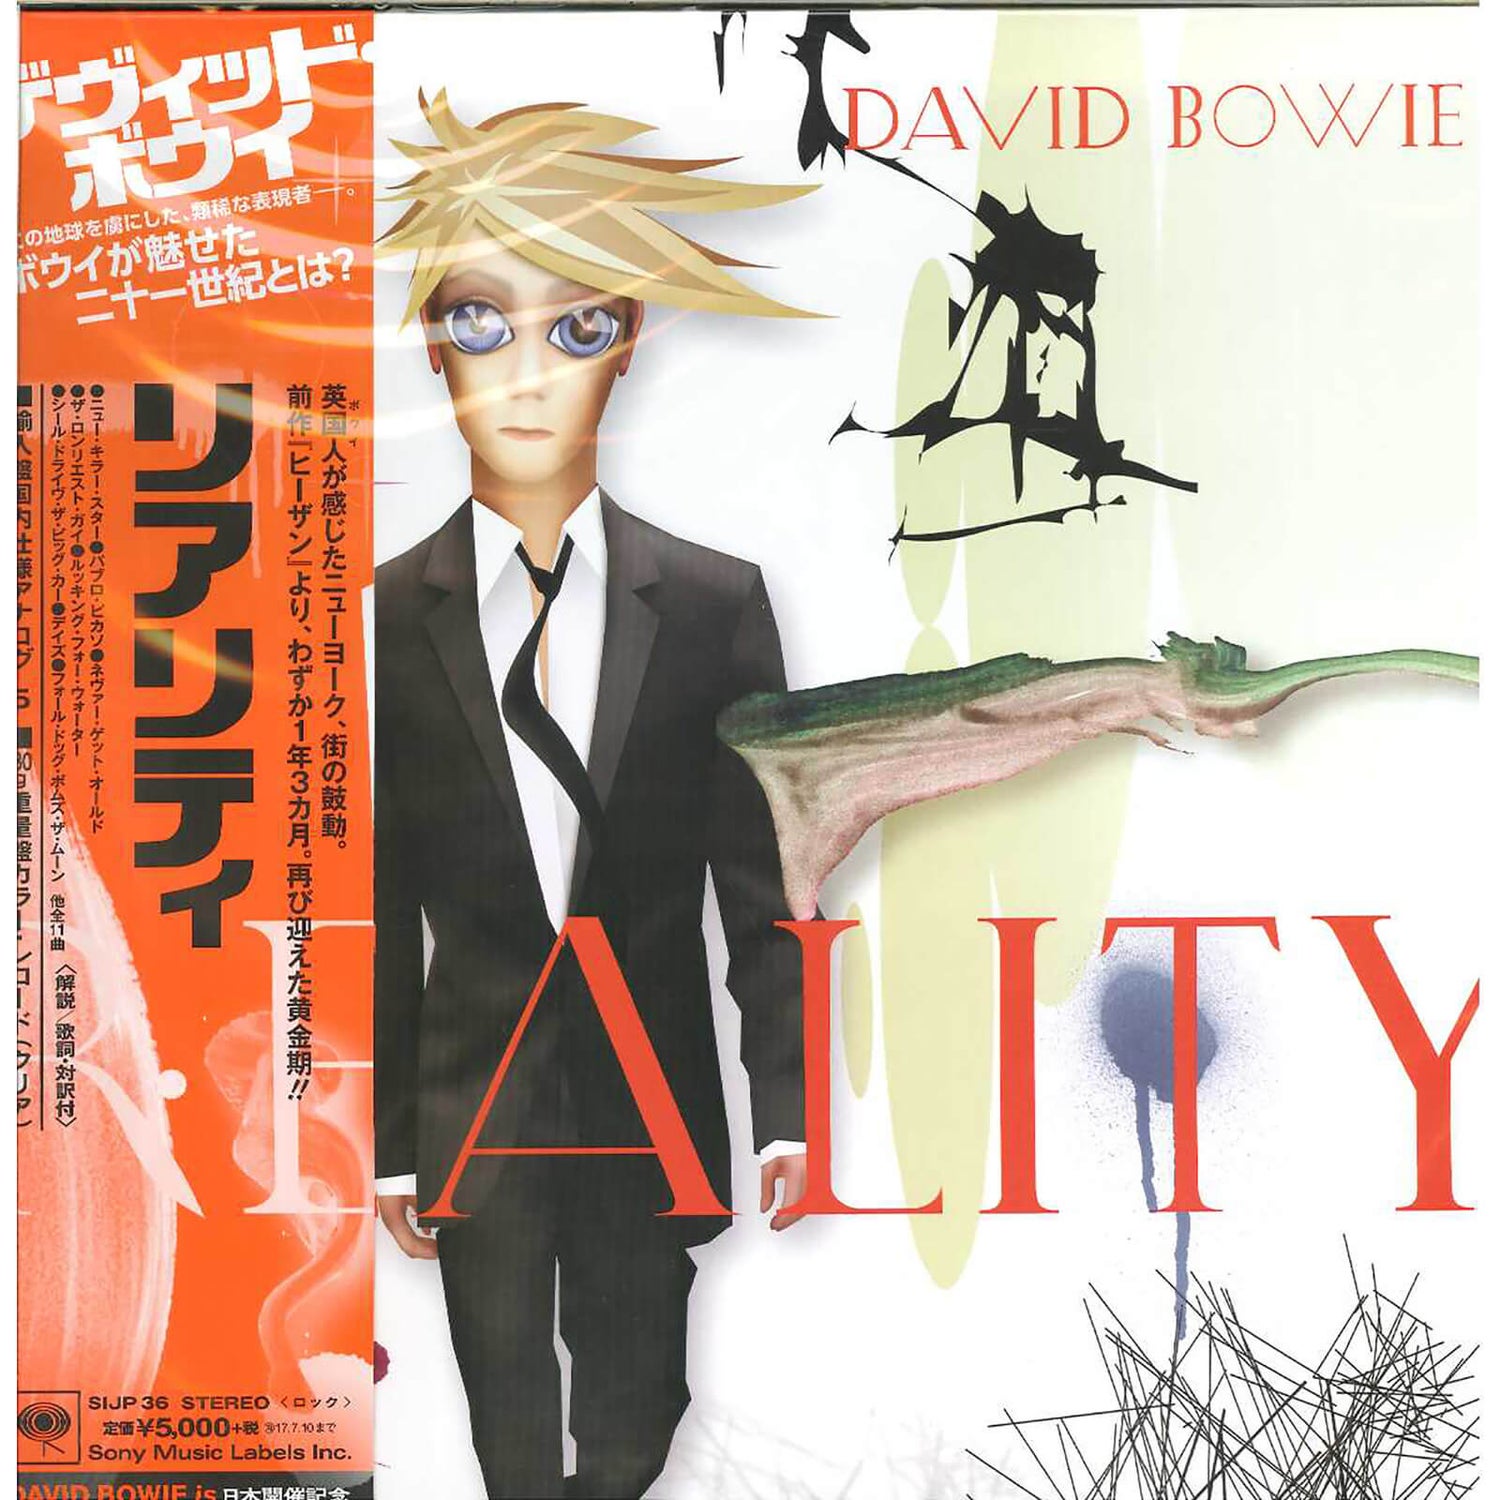 David Bowie - Reality LP Japanische Ausgabe